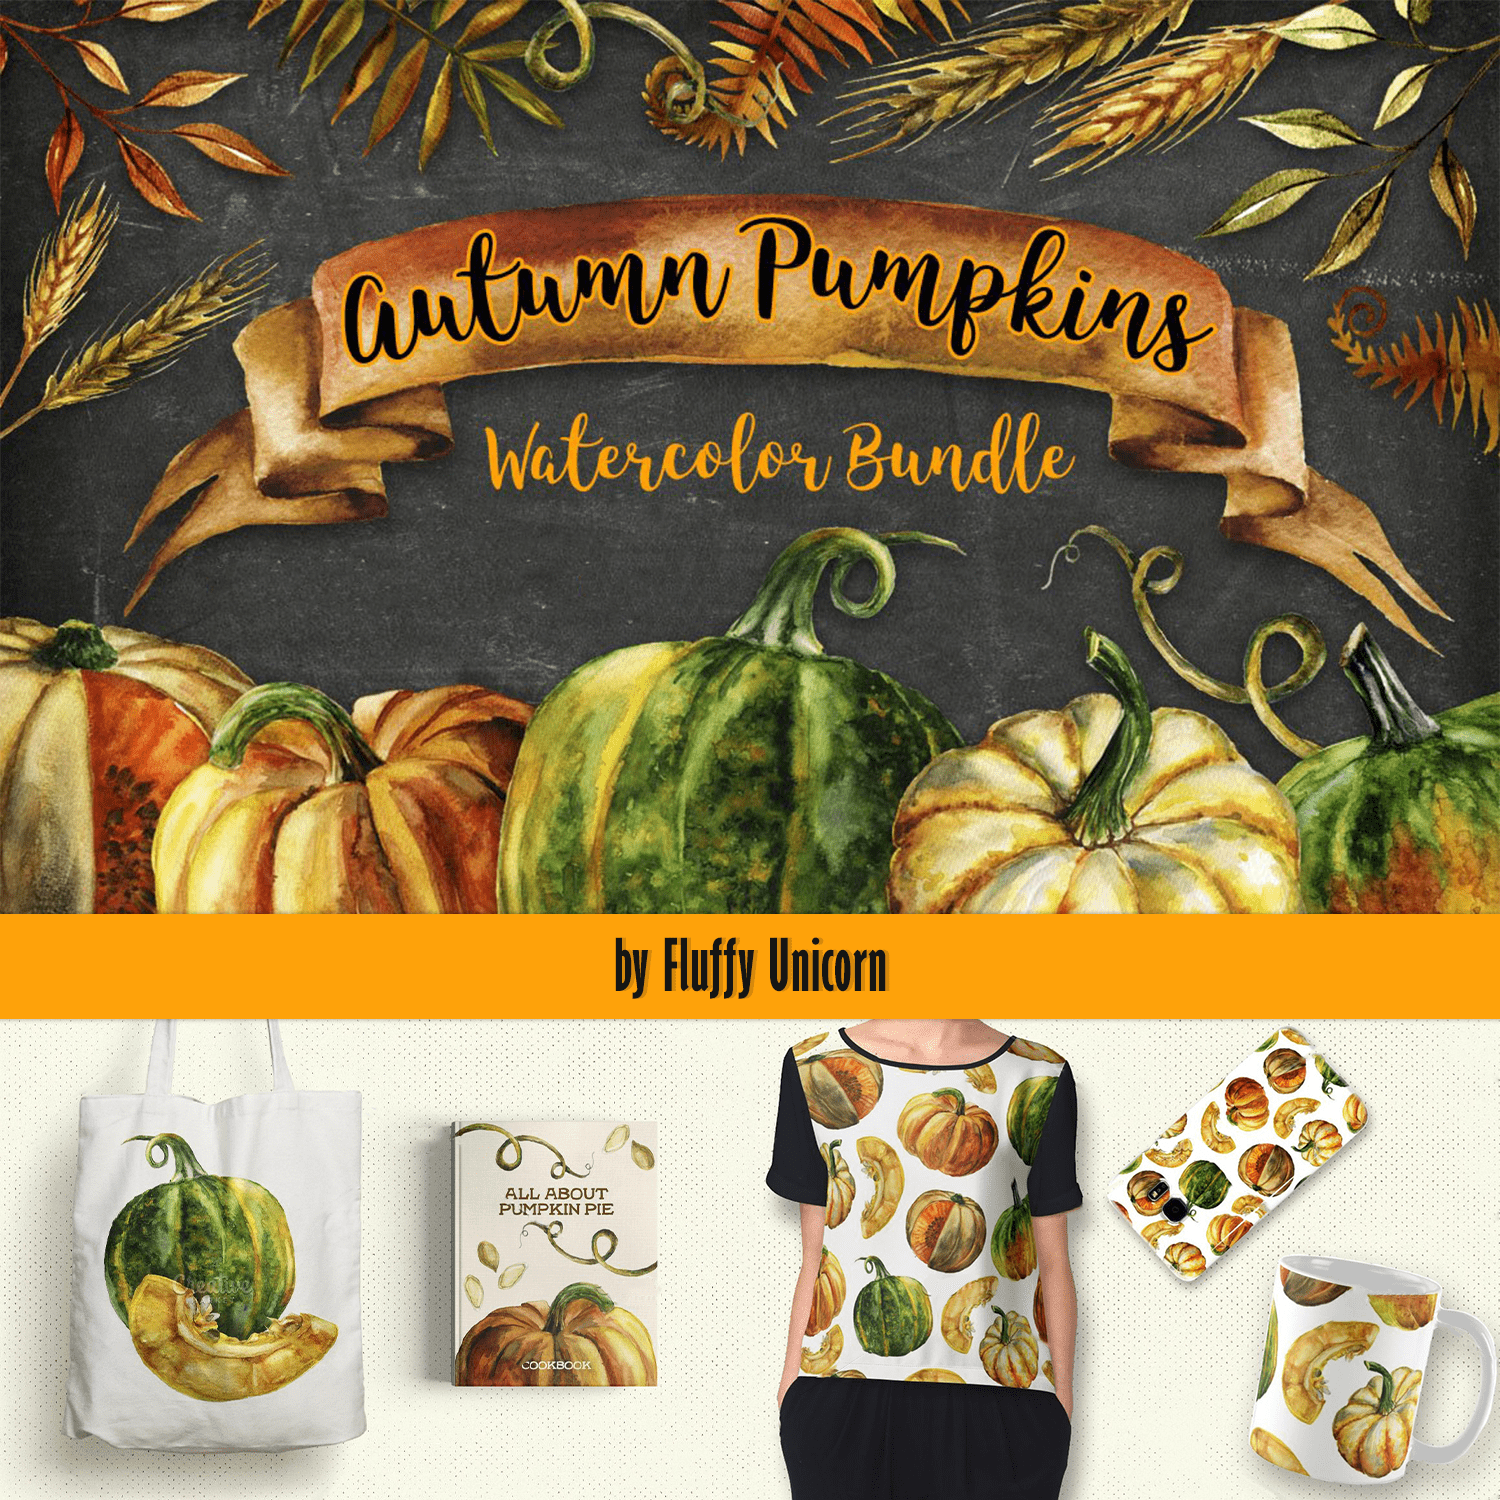 Autumn Pumpkins Watercolor Bundle cover.